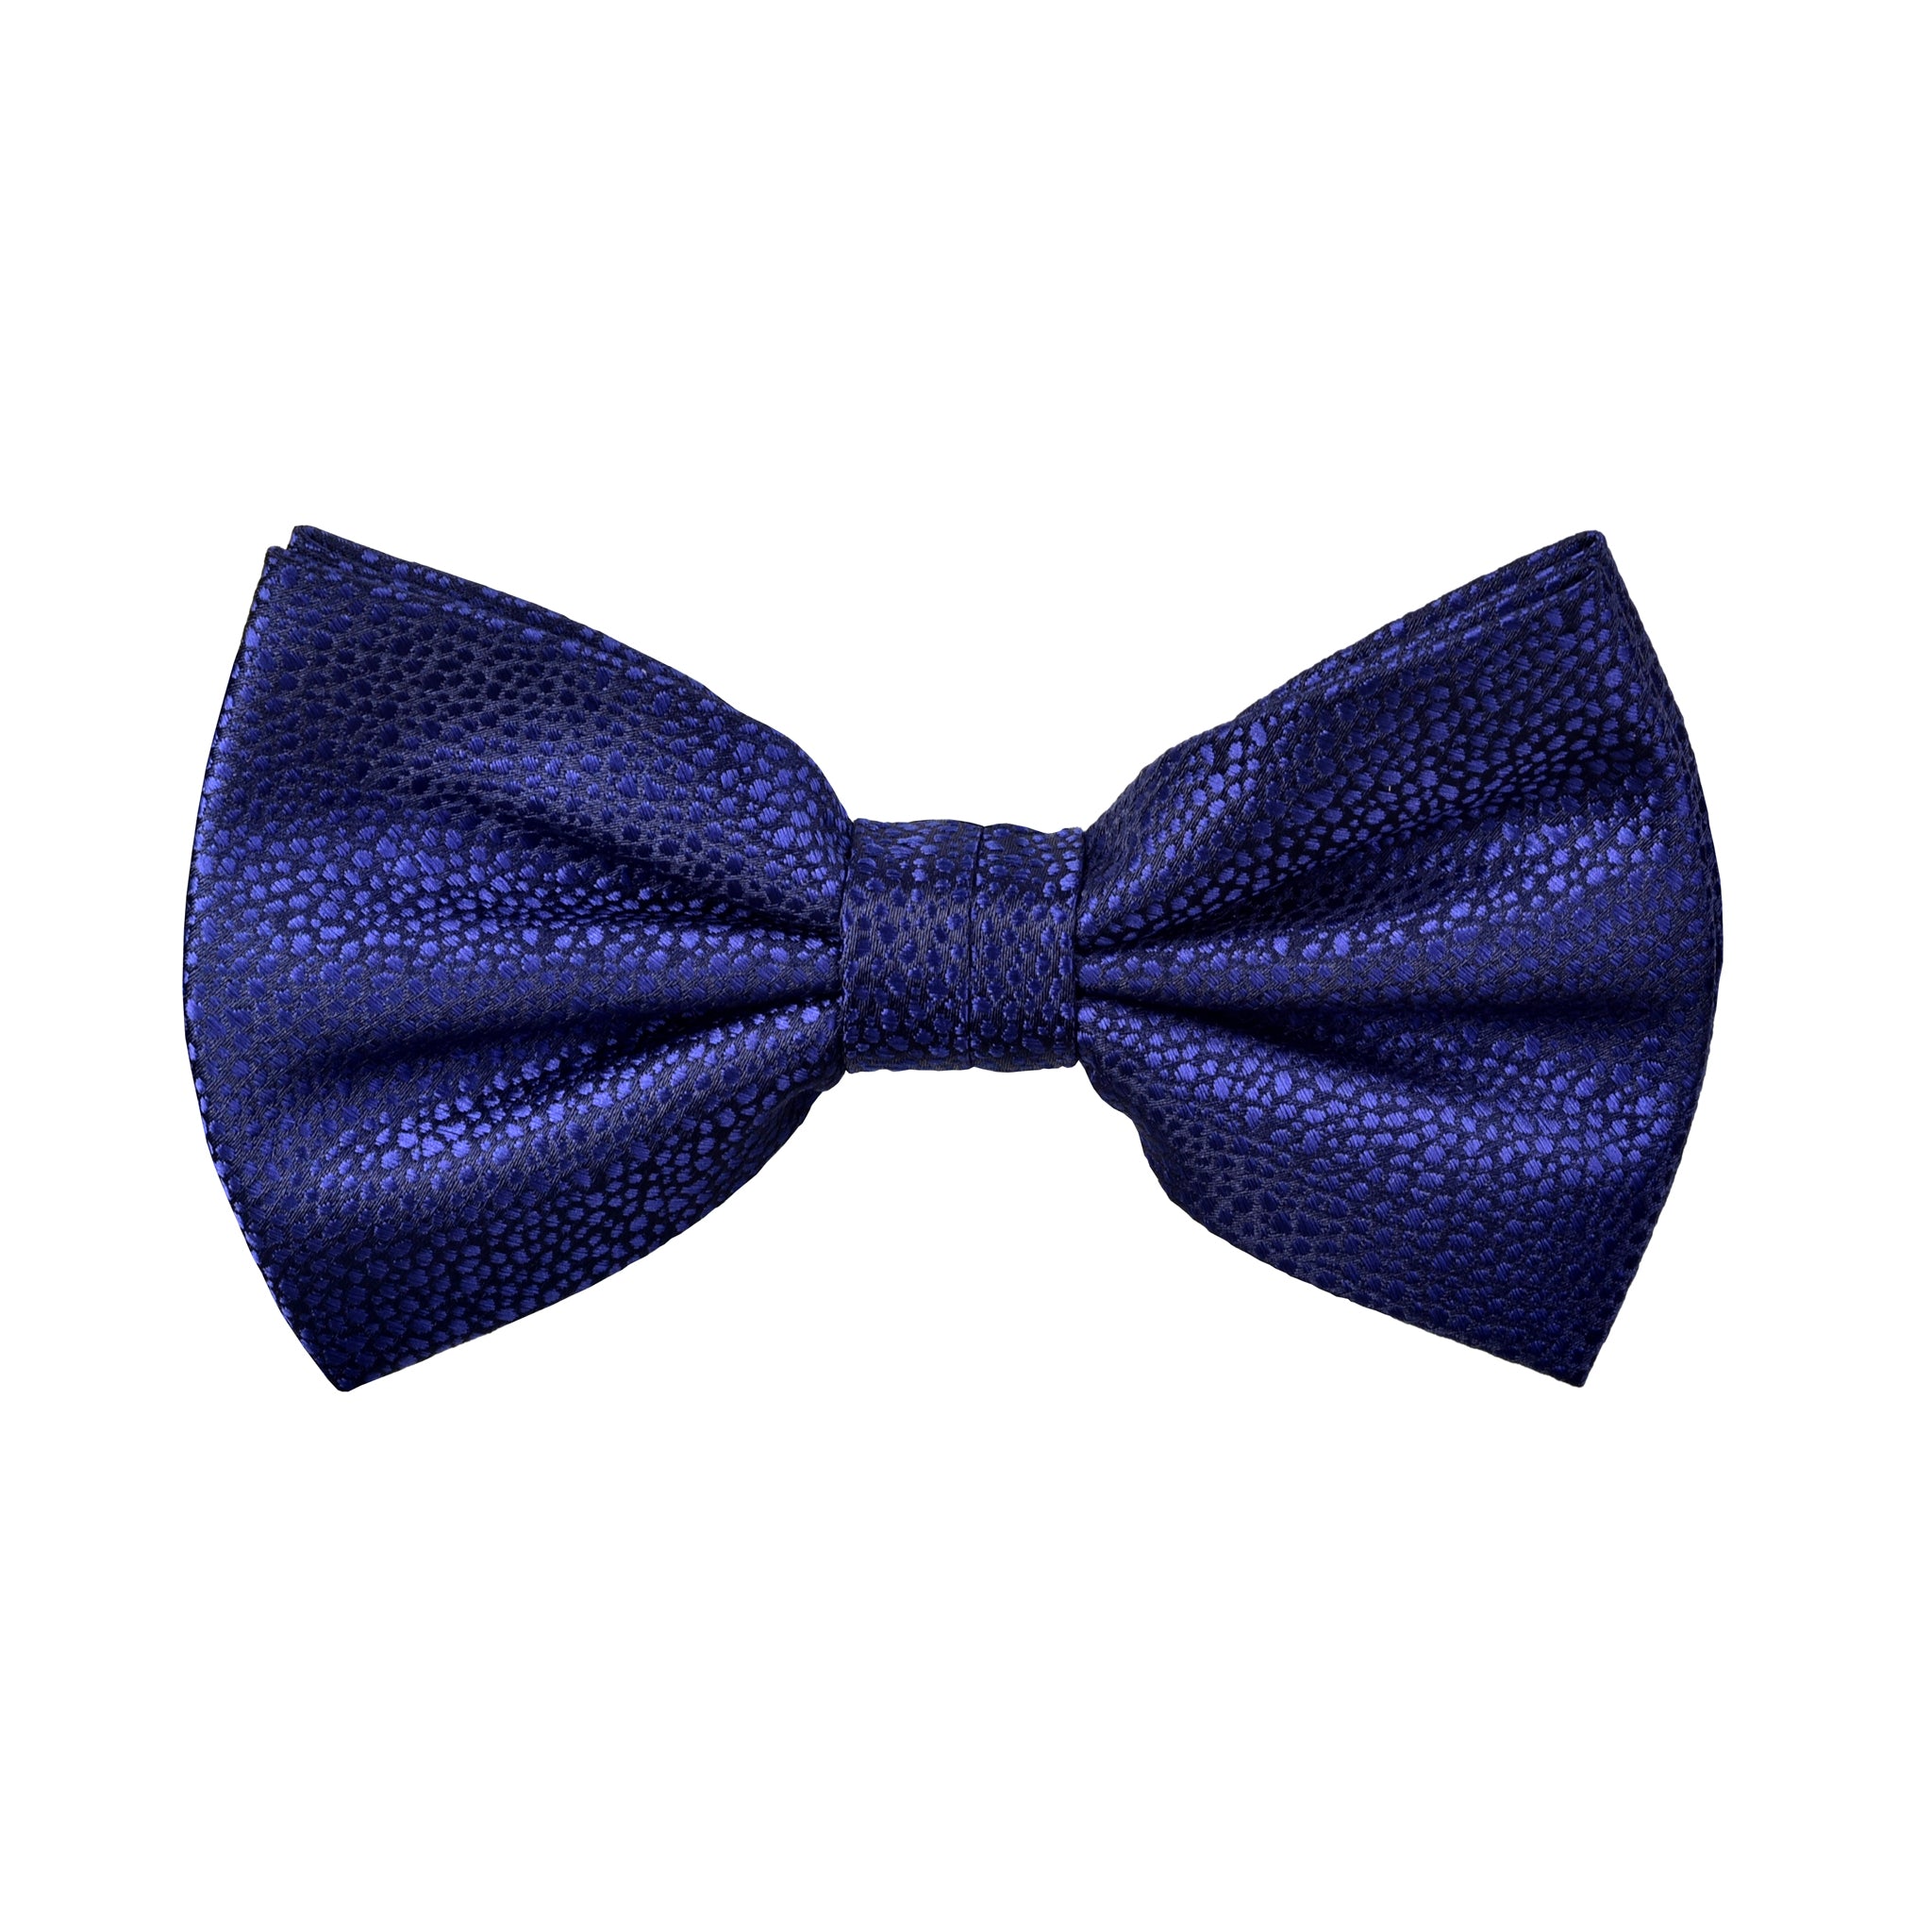 Textured Damon Bow Tie in Navy Blue Reptile - Giorgio Mandelli® Official Site | GIORGIO MANDELLI Made in Italy